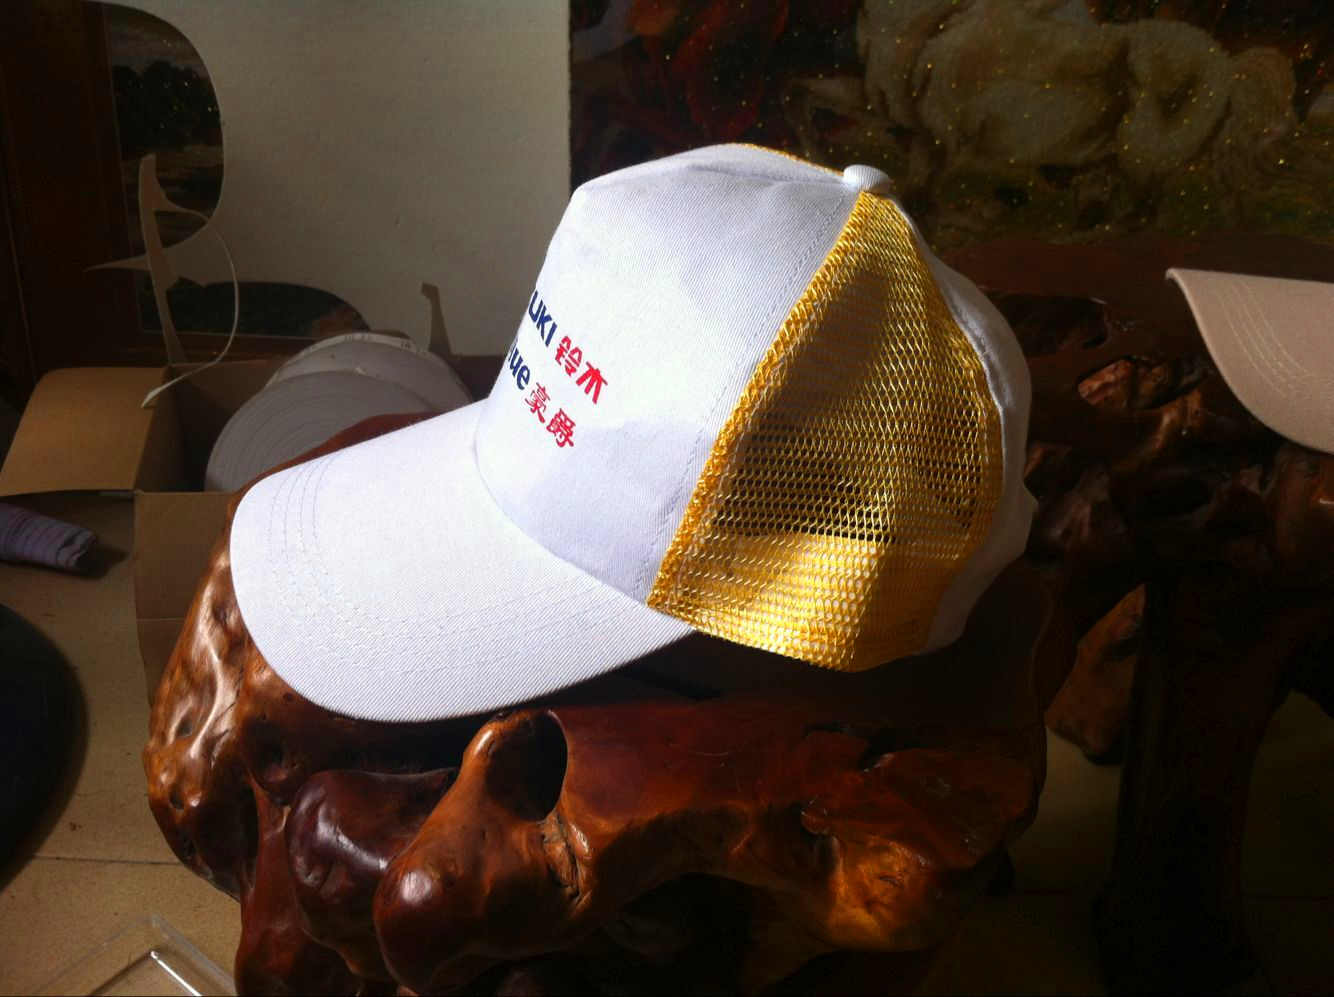 阳西帽子生产厂家 定制加工 网帽 运动帽 太阳帽 棒球帽 可上LOGO刺绣印花 帽子ODM厂家 帽子OEM厂家